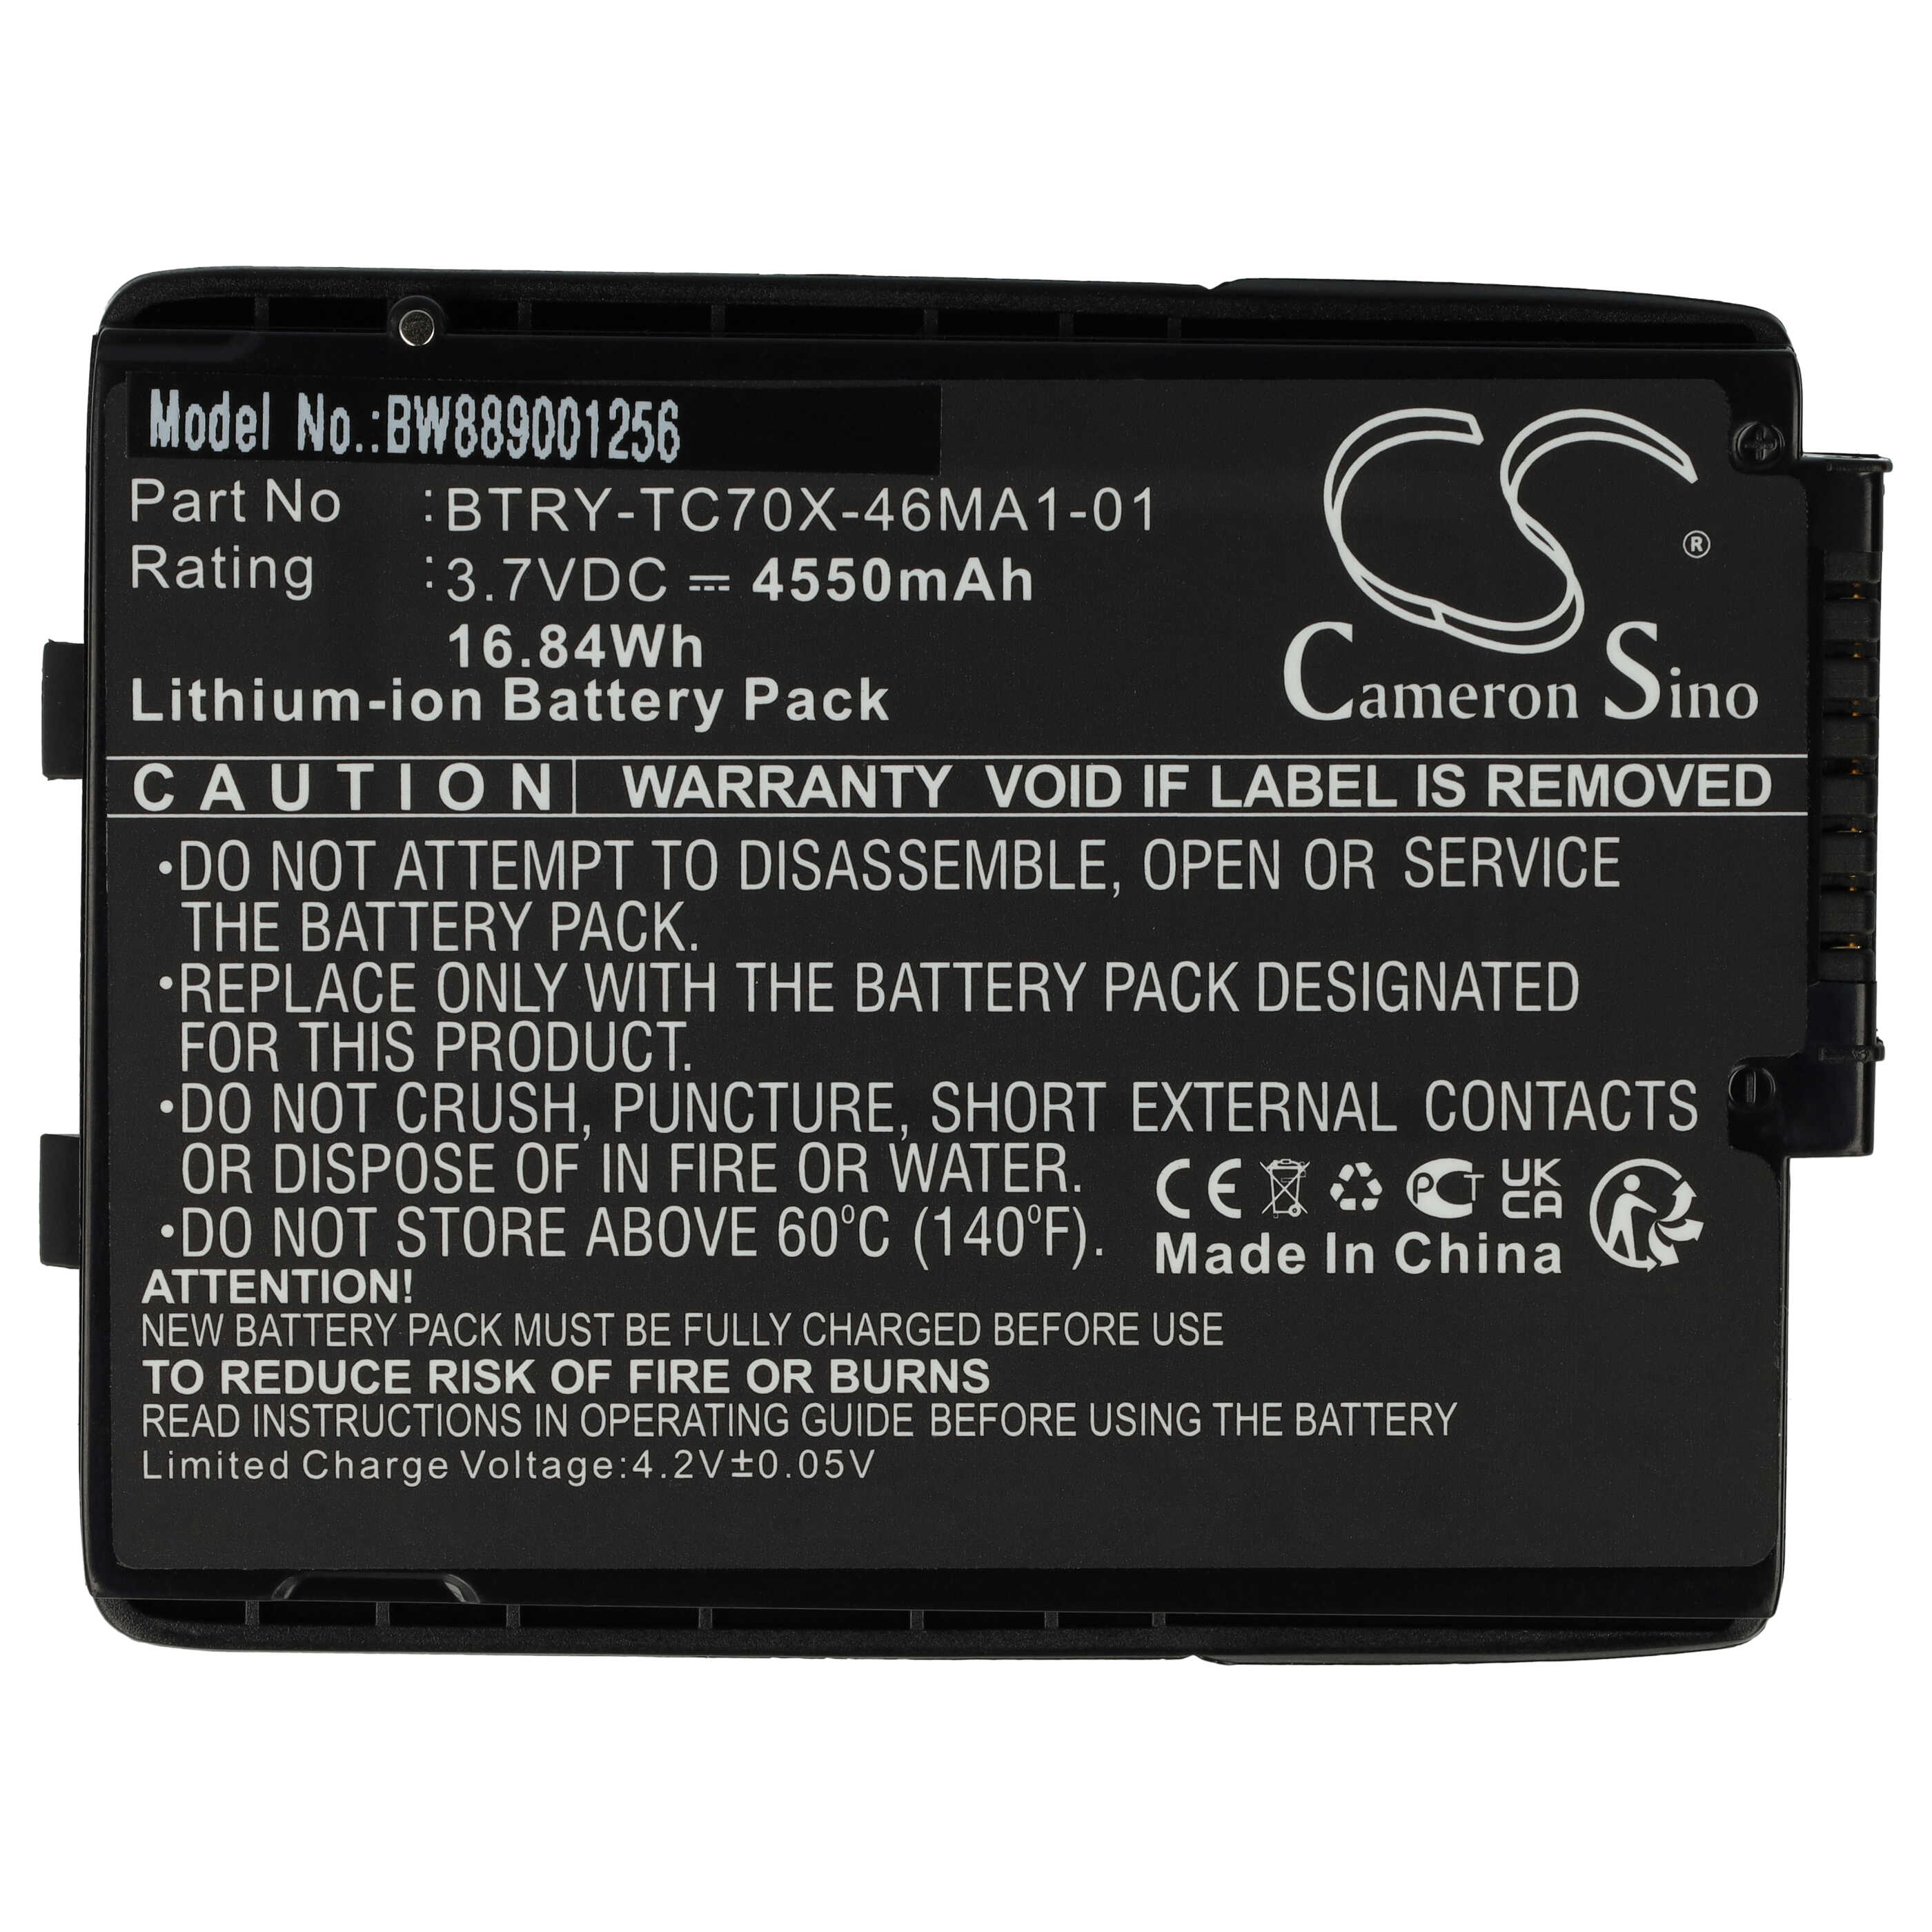 Akumulator do czytnika kodów kreskowych zamiennik Motorola 82-171249-01, 82-171249-02 - 4550 mAh 3,7 V Li-Ion